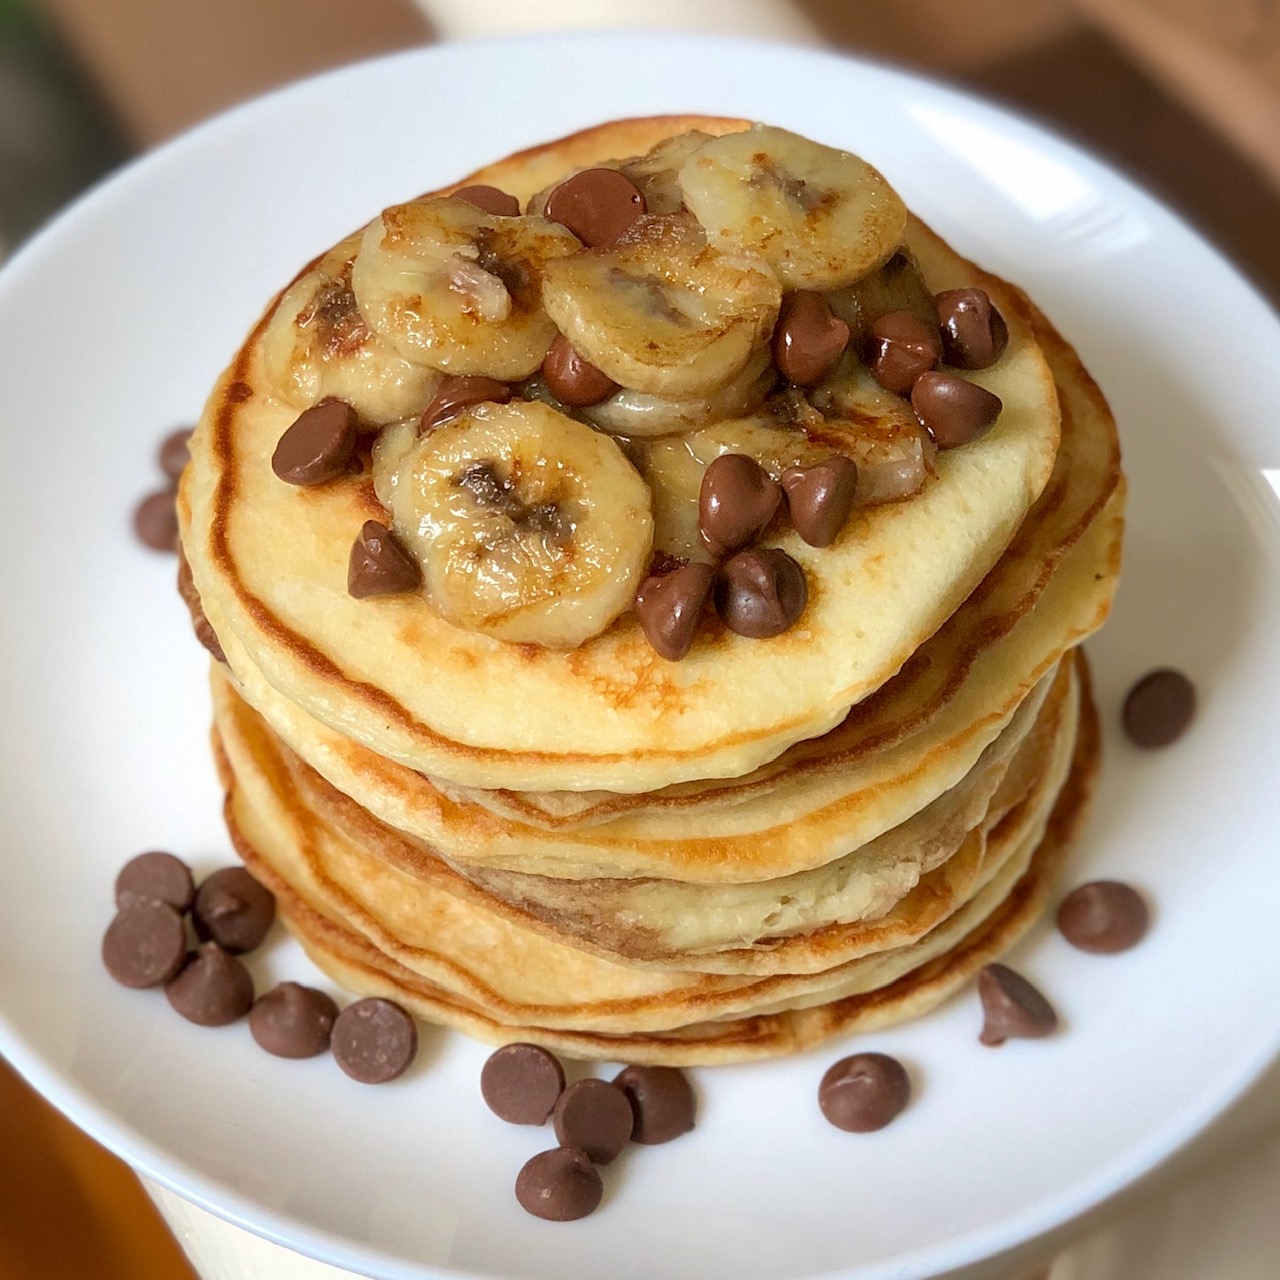 Greek yogurt pancakes with bananas